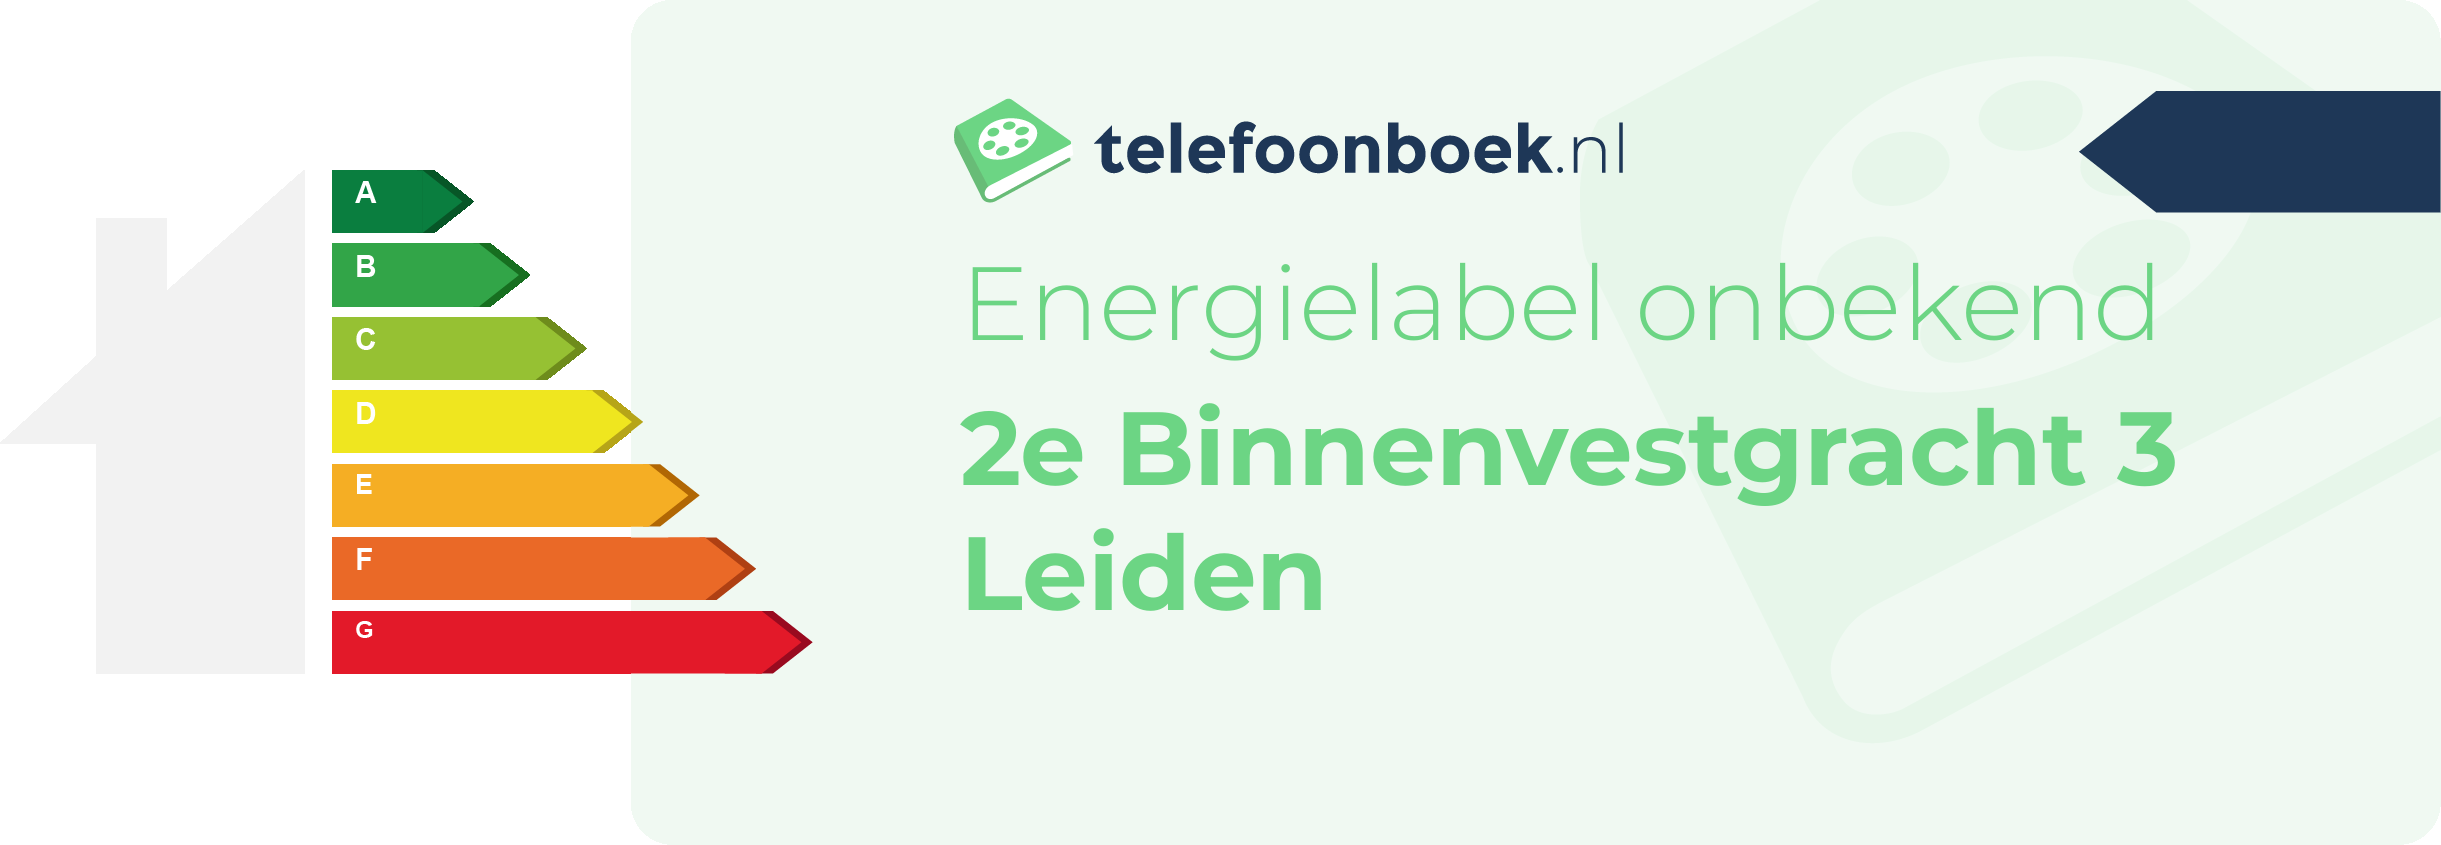 Energielabel 2e Binnenvestgracht 3 Leiden